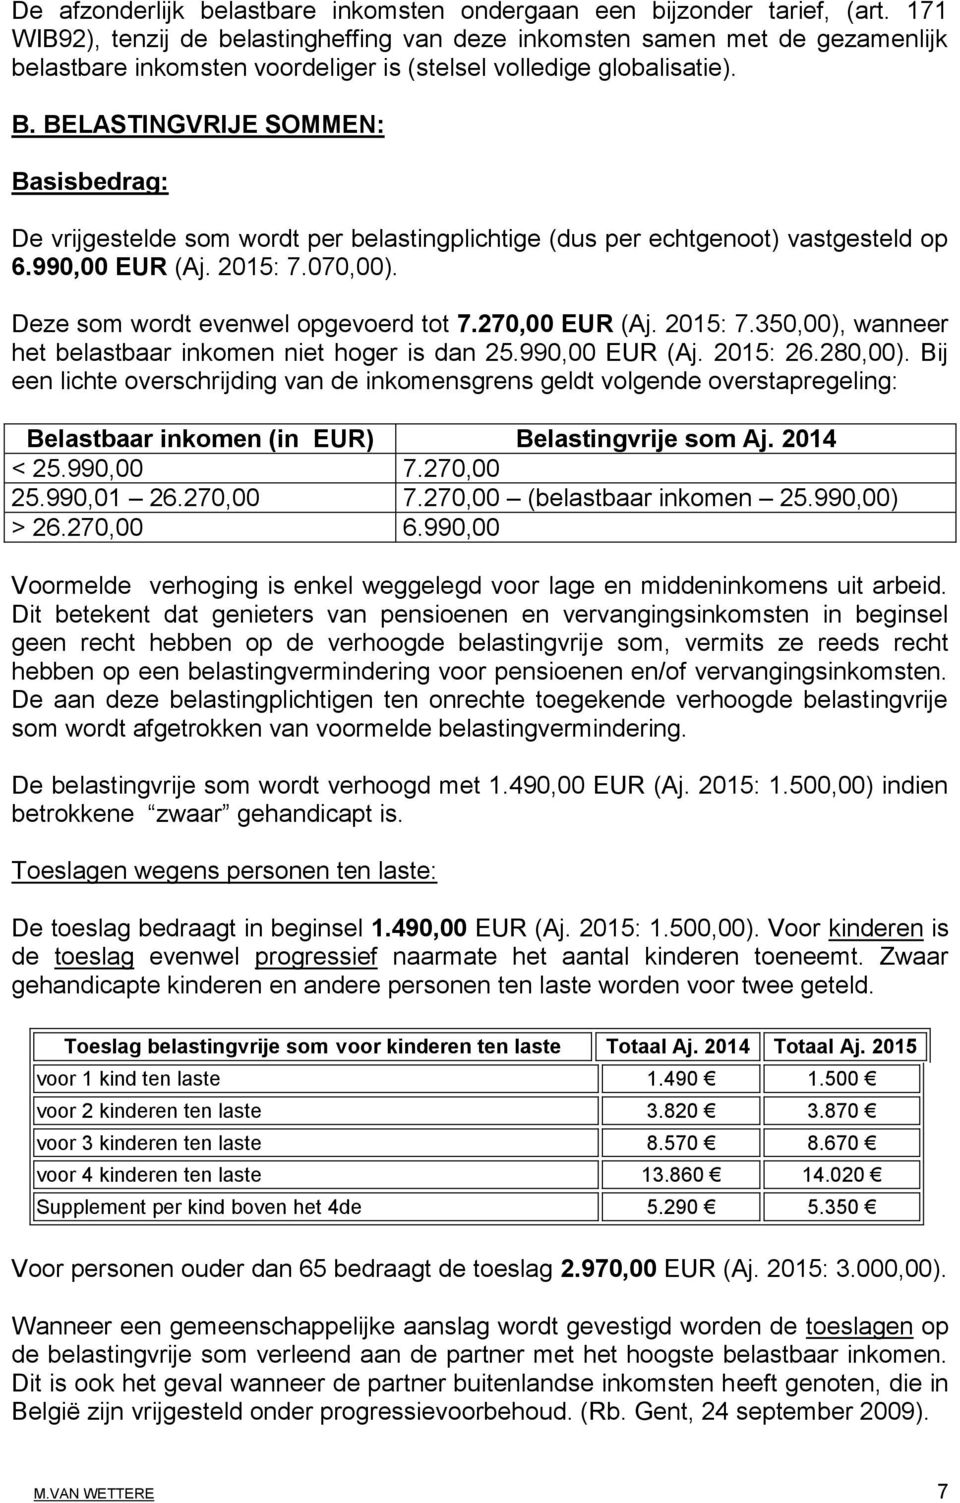 BELASTINGVRIJE SOMMEN: Basisbedrag: De vrijgestelde som wordt per belastingplichtige (dus per echtgenoot) vastgesteld op 6.990,00 EUR (Aj. 2015: 7.070,00). Deze som wordt evenwel opgevoerd tot 7.